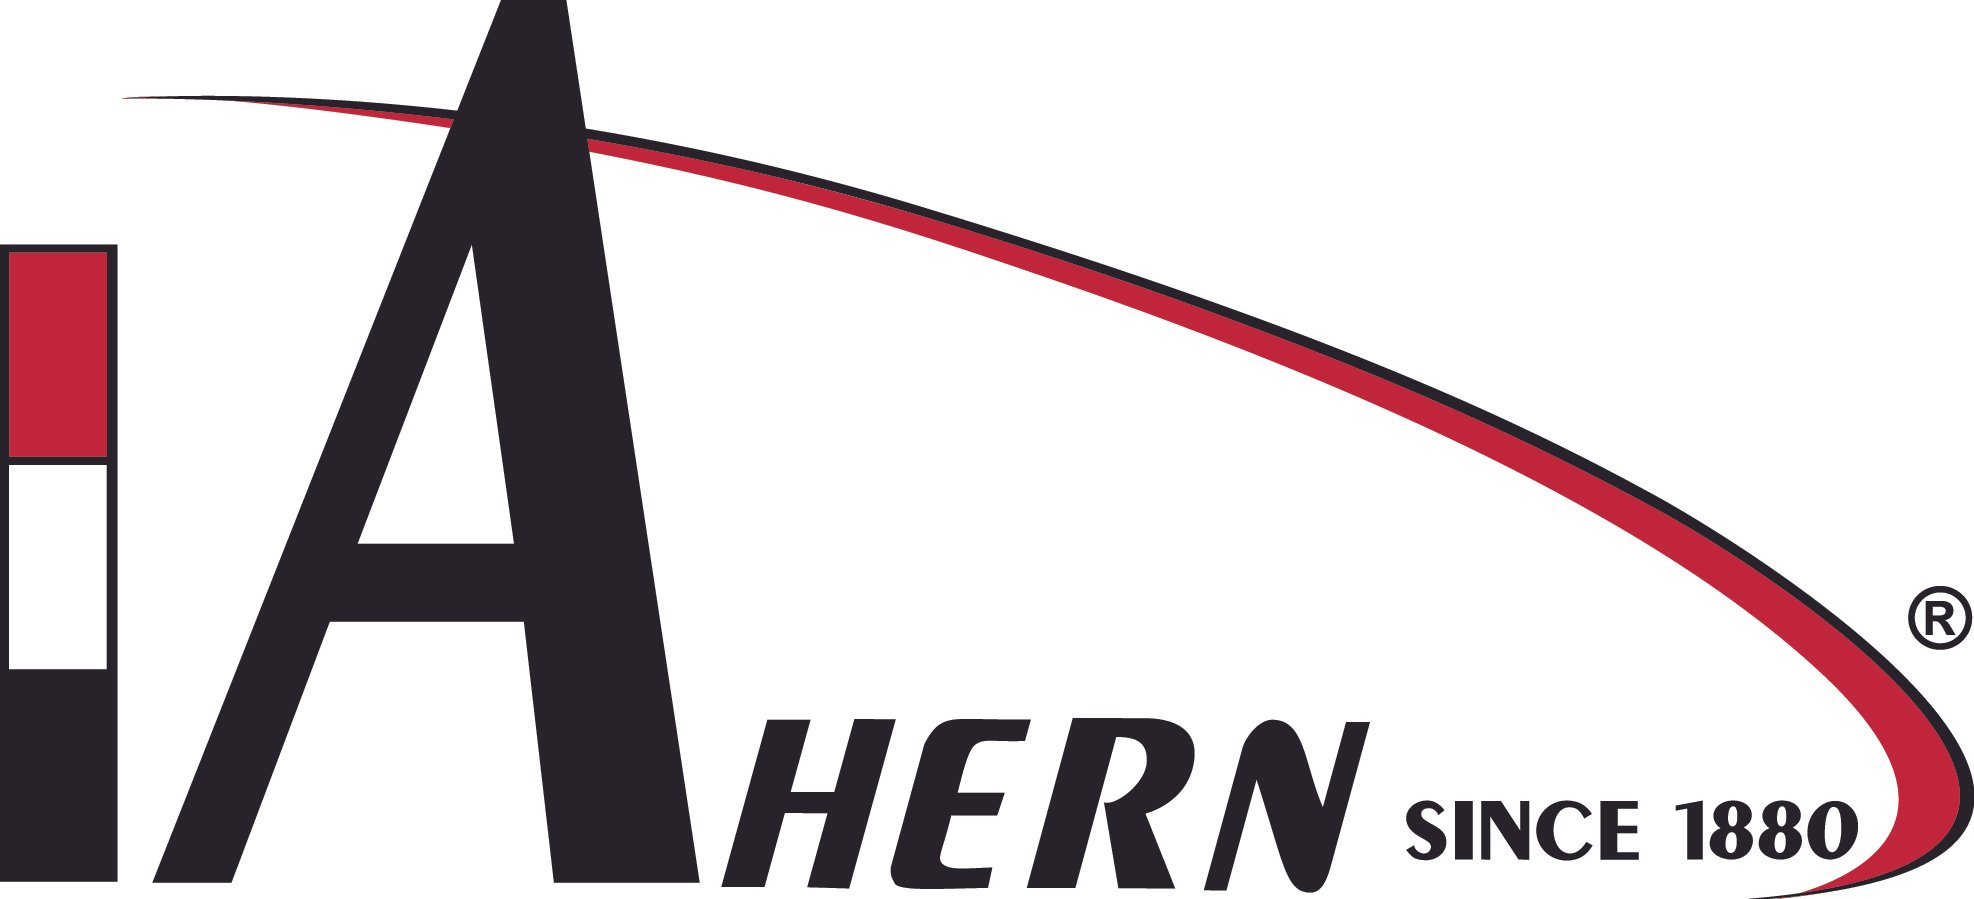 Ahern Logo_High Res $755.jpg